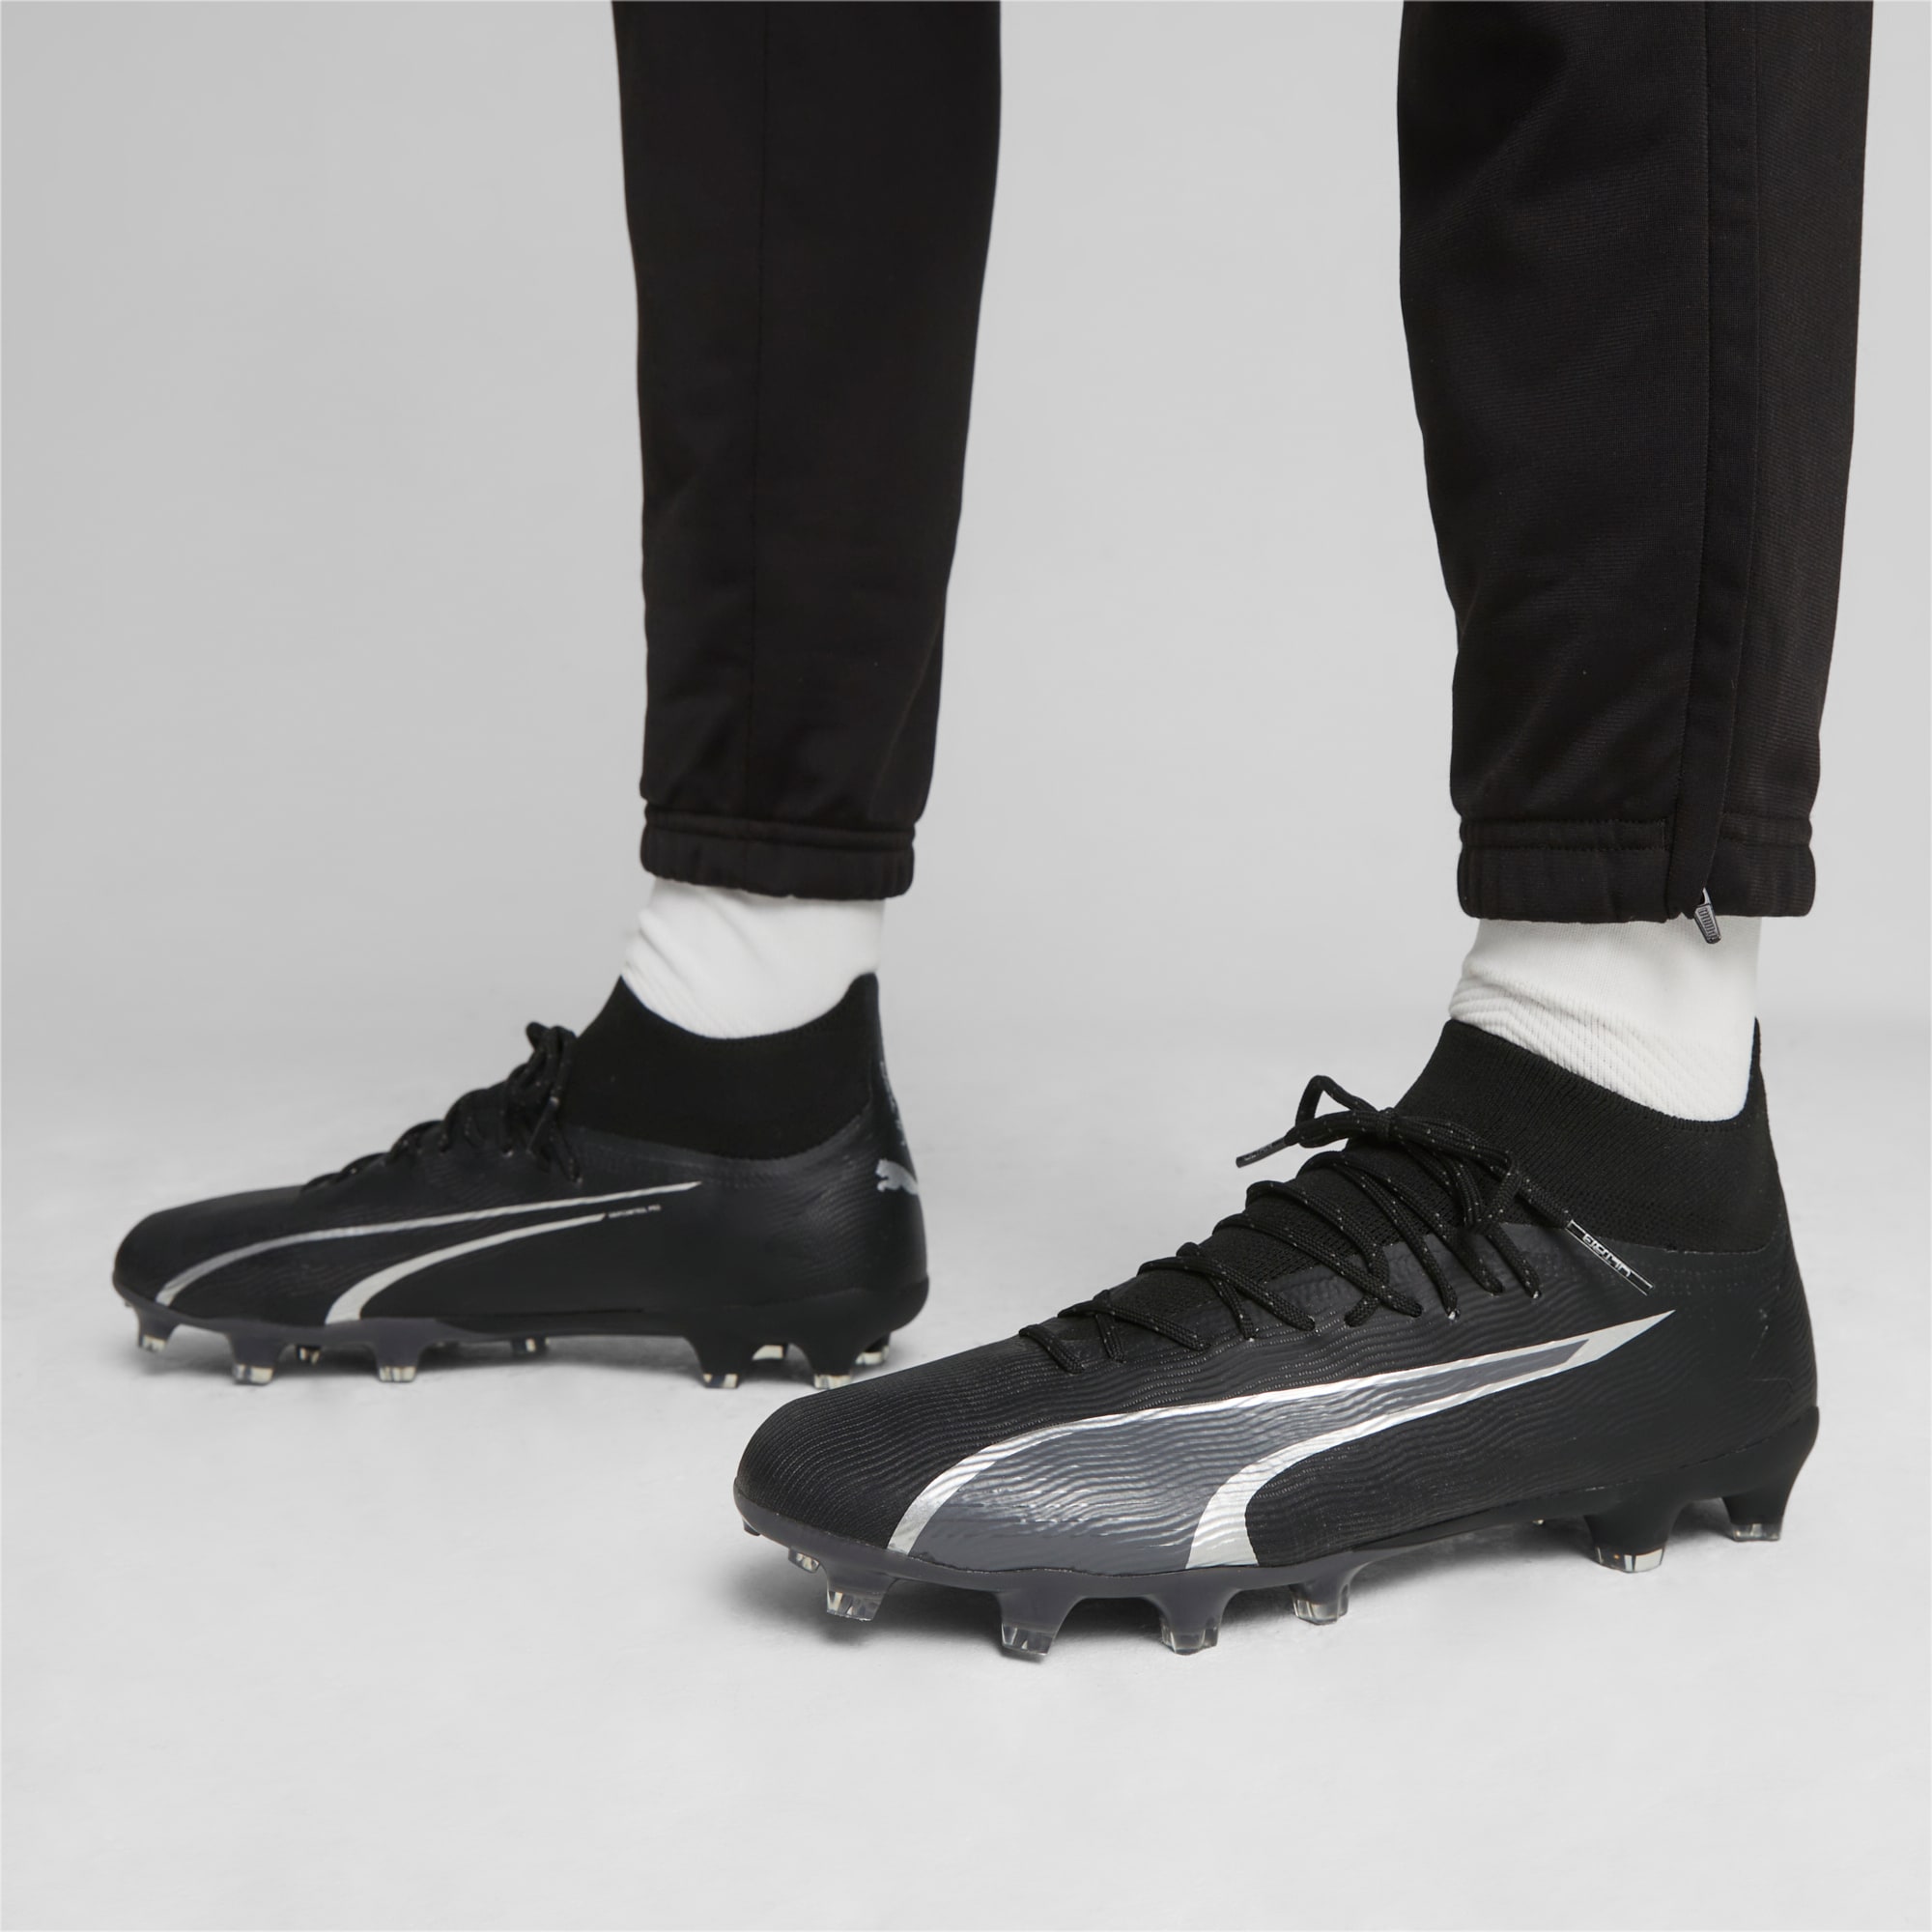 PUMA Chaussures De Football ULTRA PRO FG/AG Pour Homme, Noir/Gris